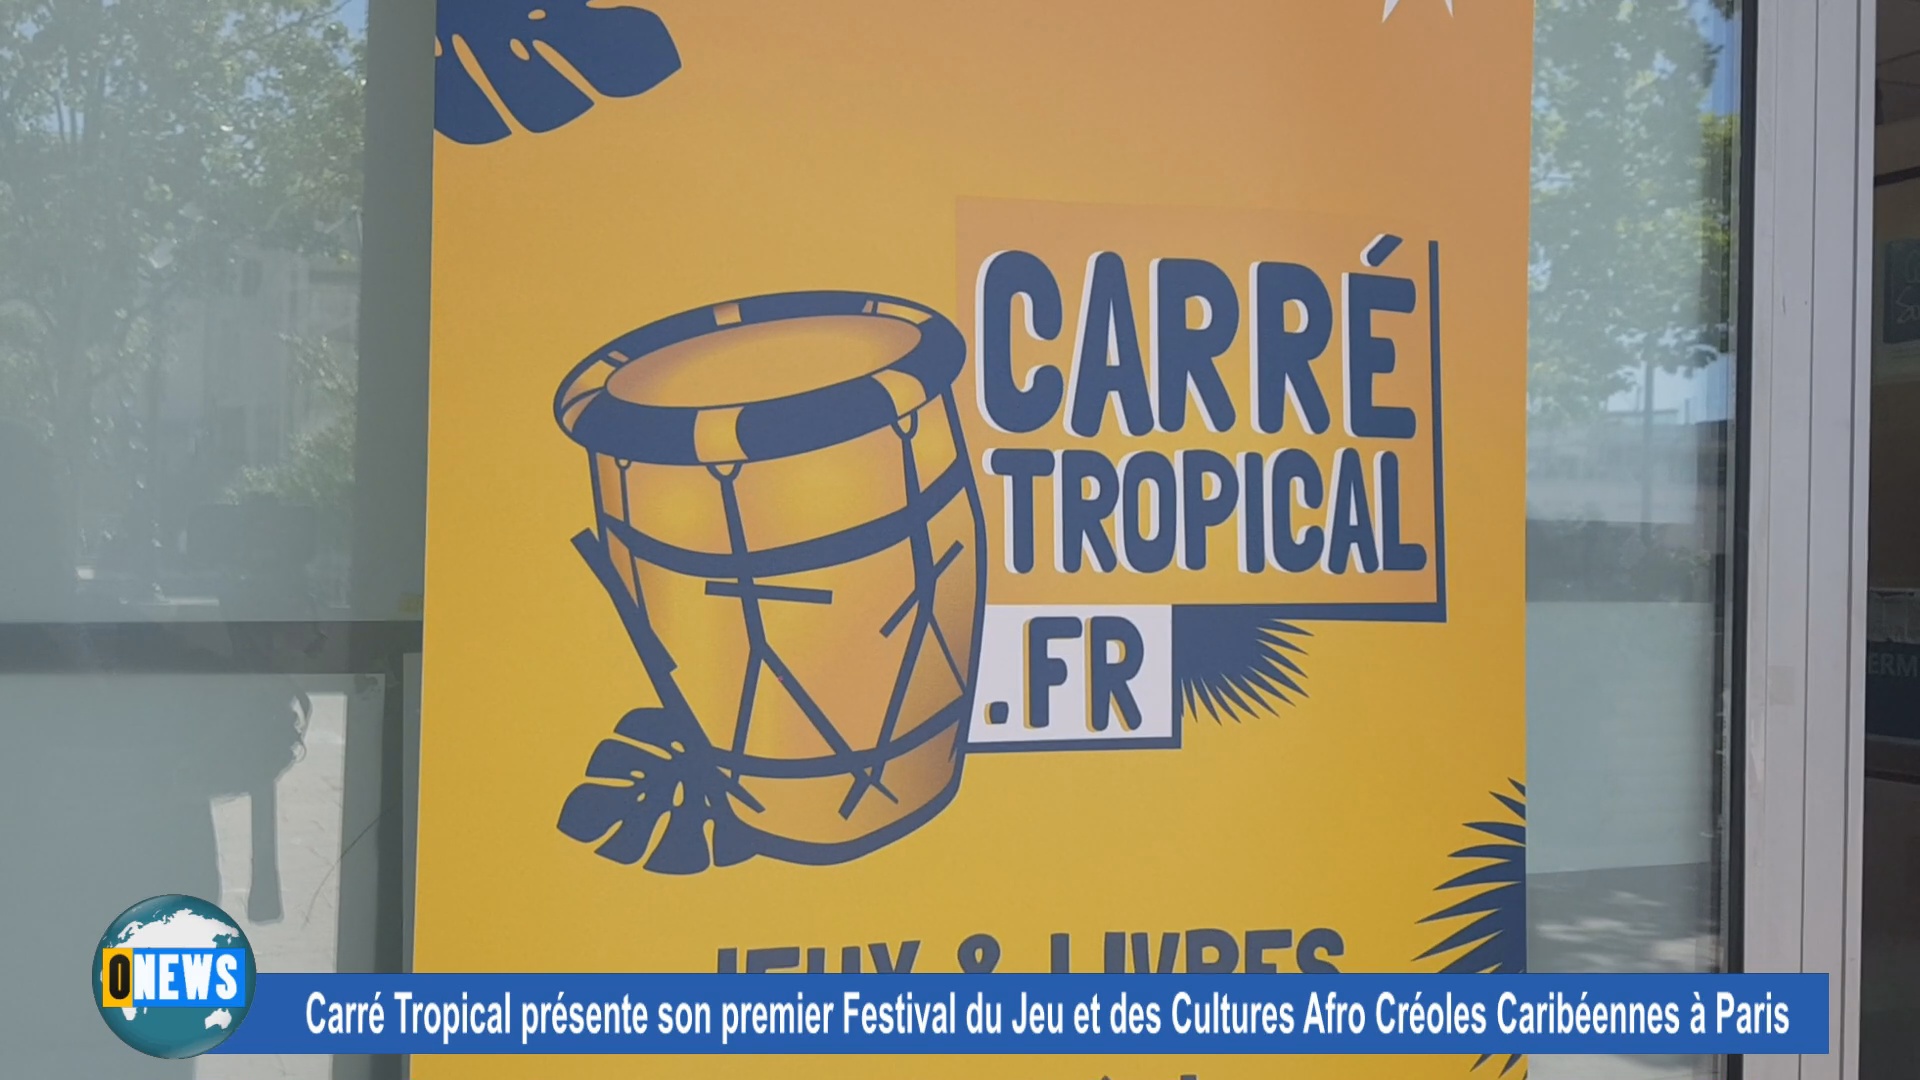 [Vidéo] Succès du premier festival jeu et cultures caribéennes à Paris organisé par Carré Tropical